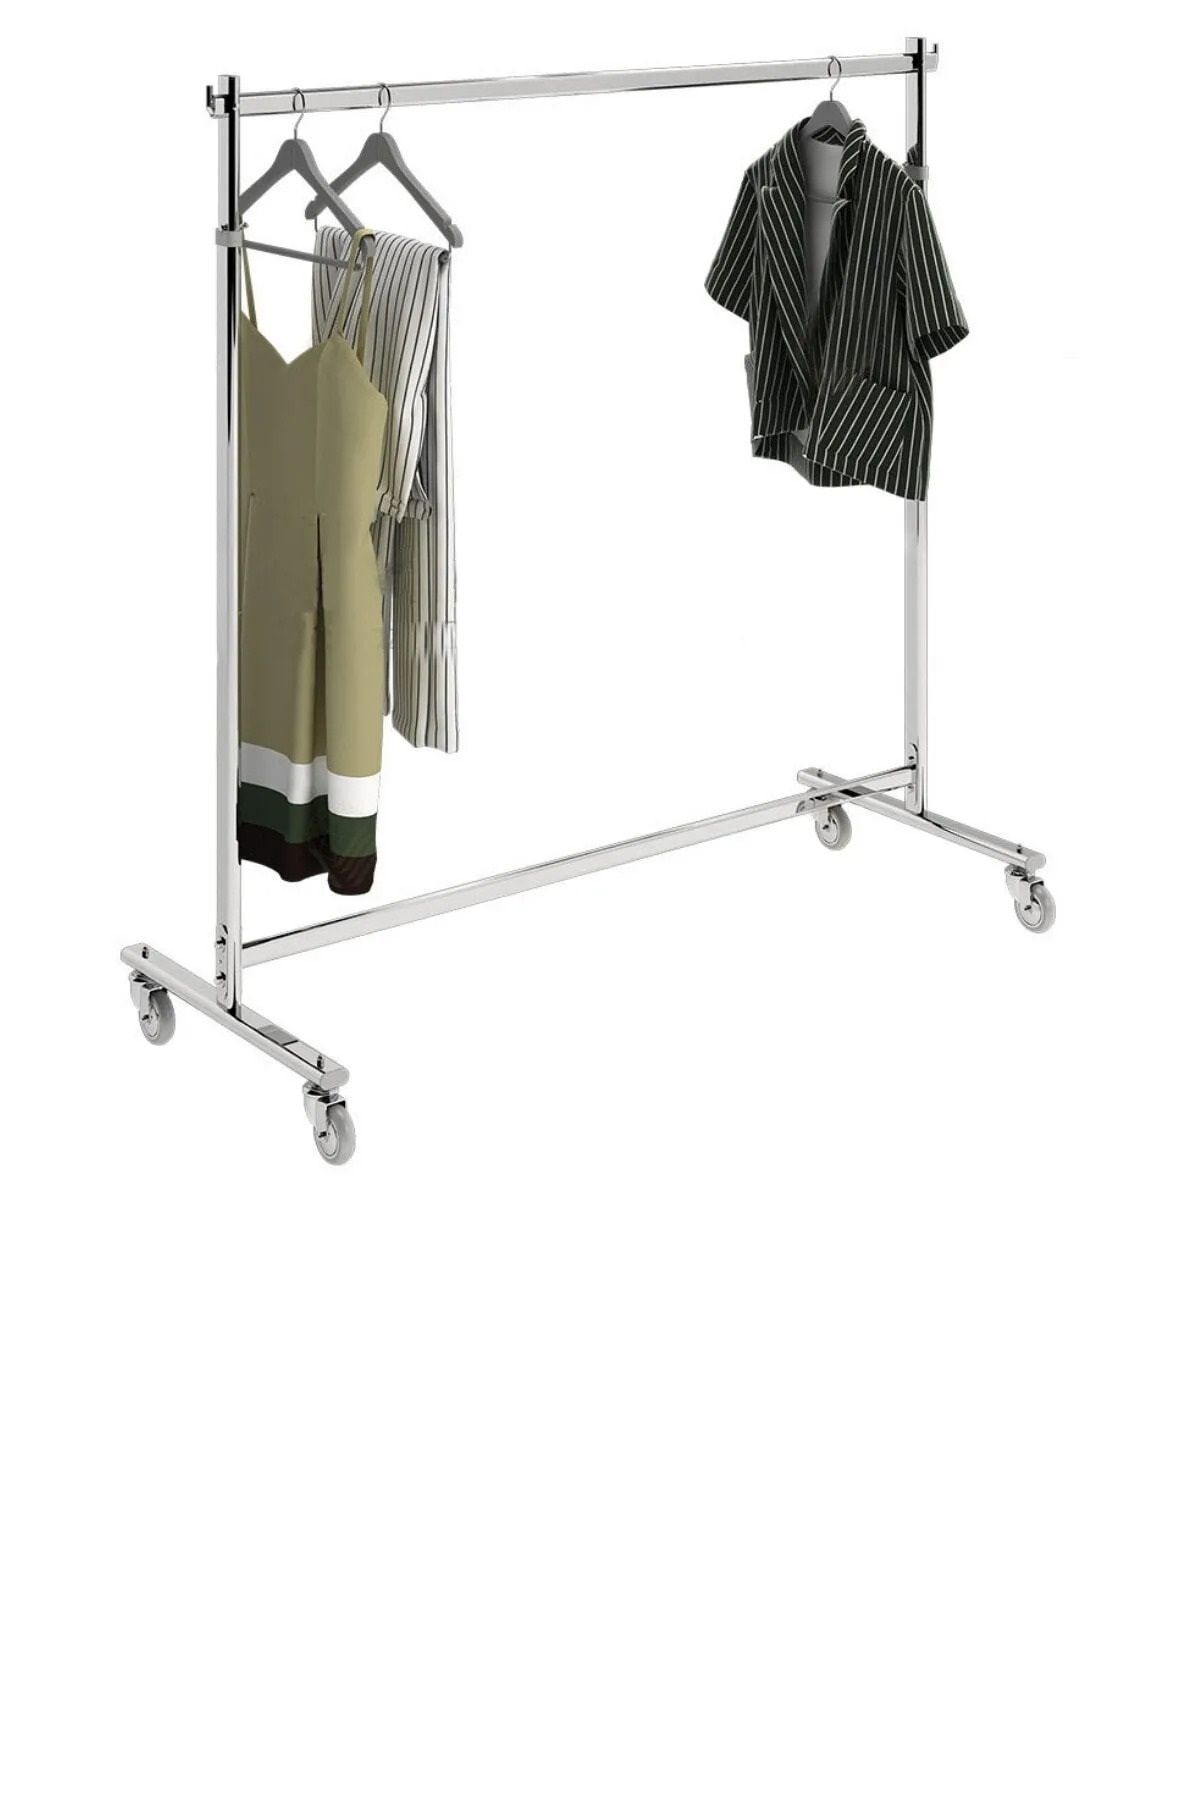 KALE Elbise Askılığı Mağaza Askısı Etek Askısı Orta Stand